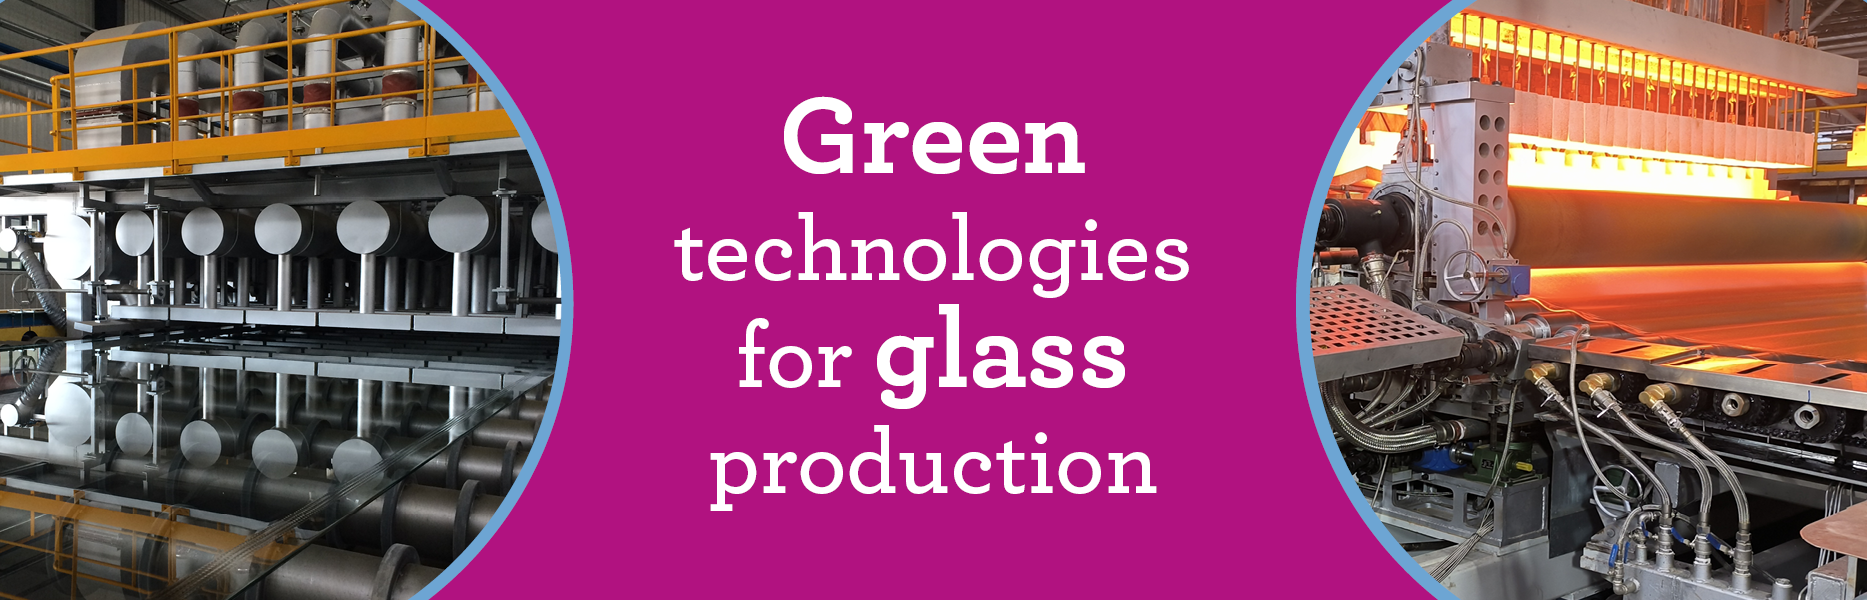 Fives glass technologies